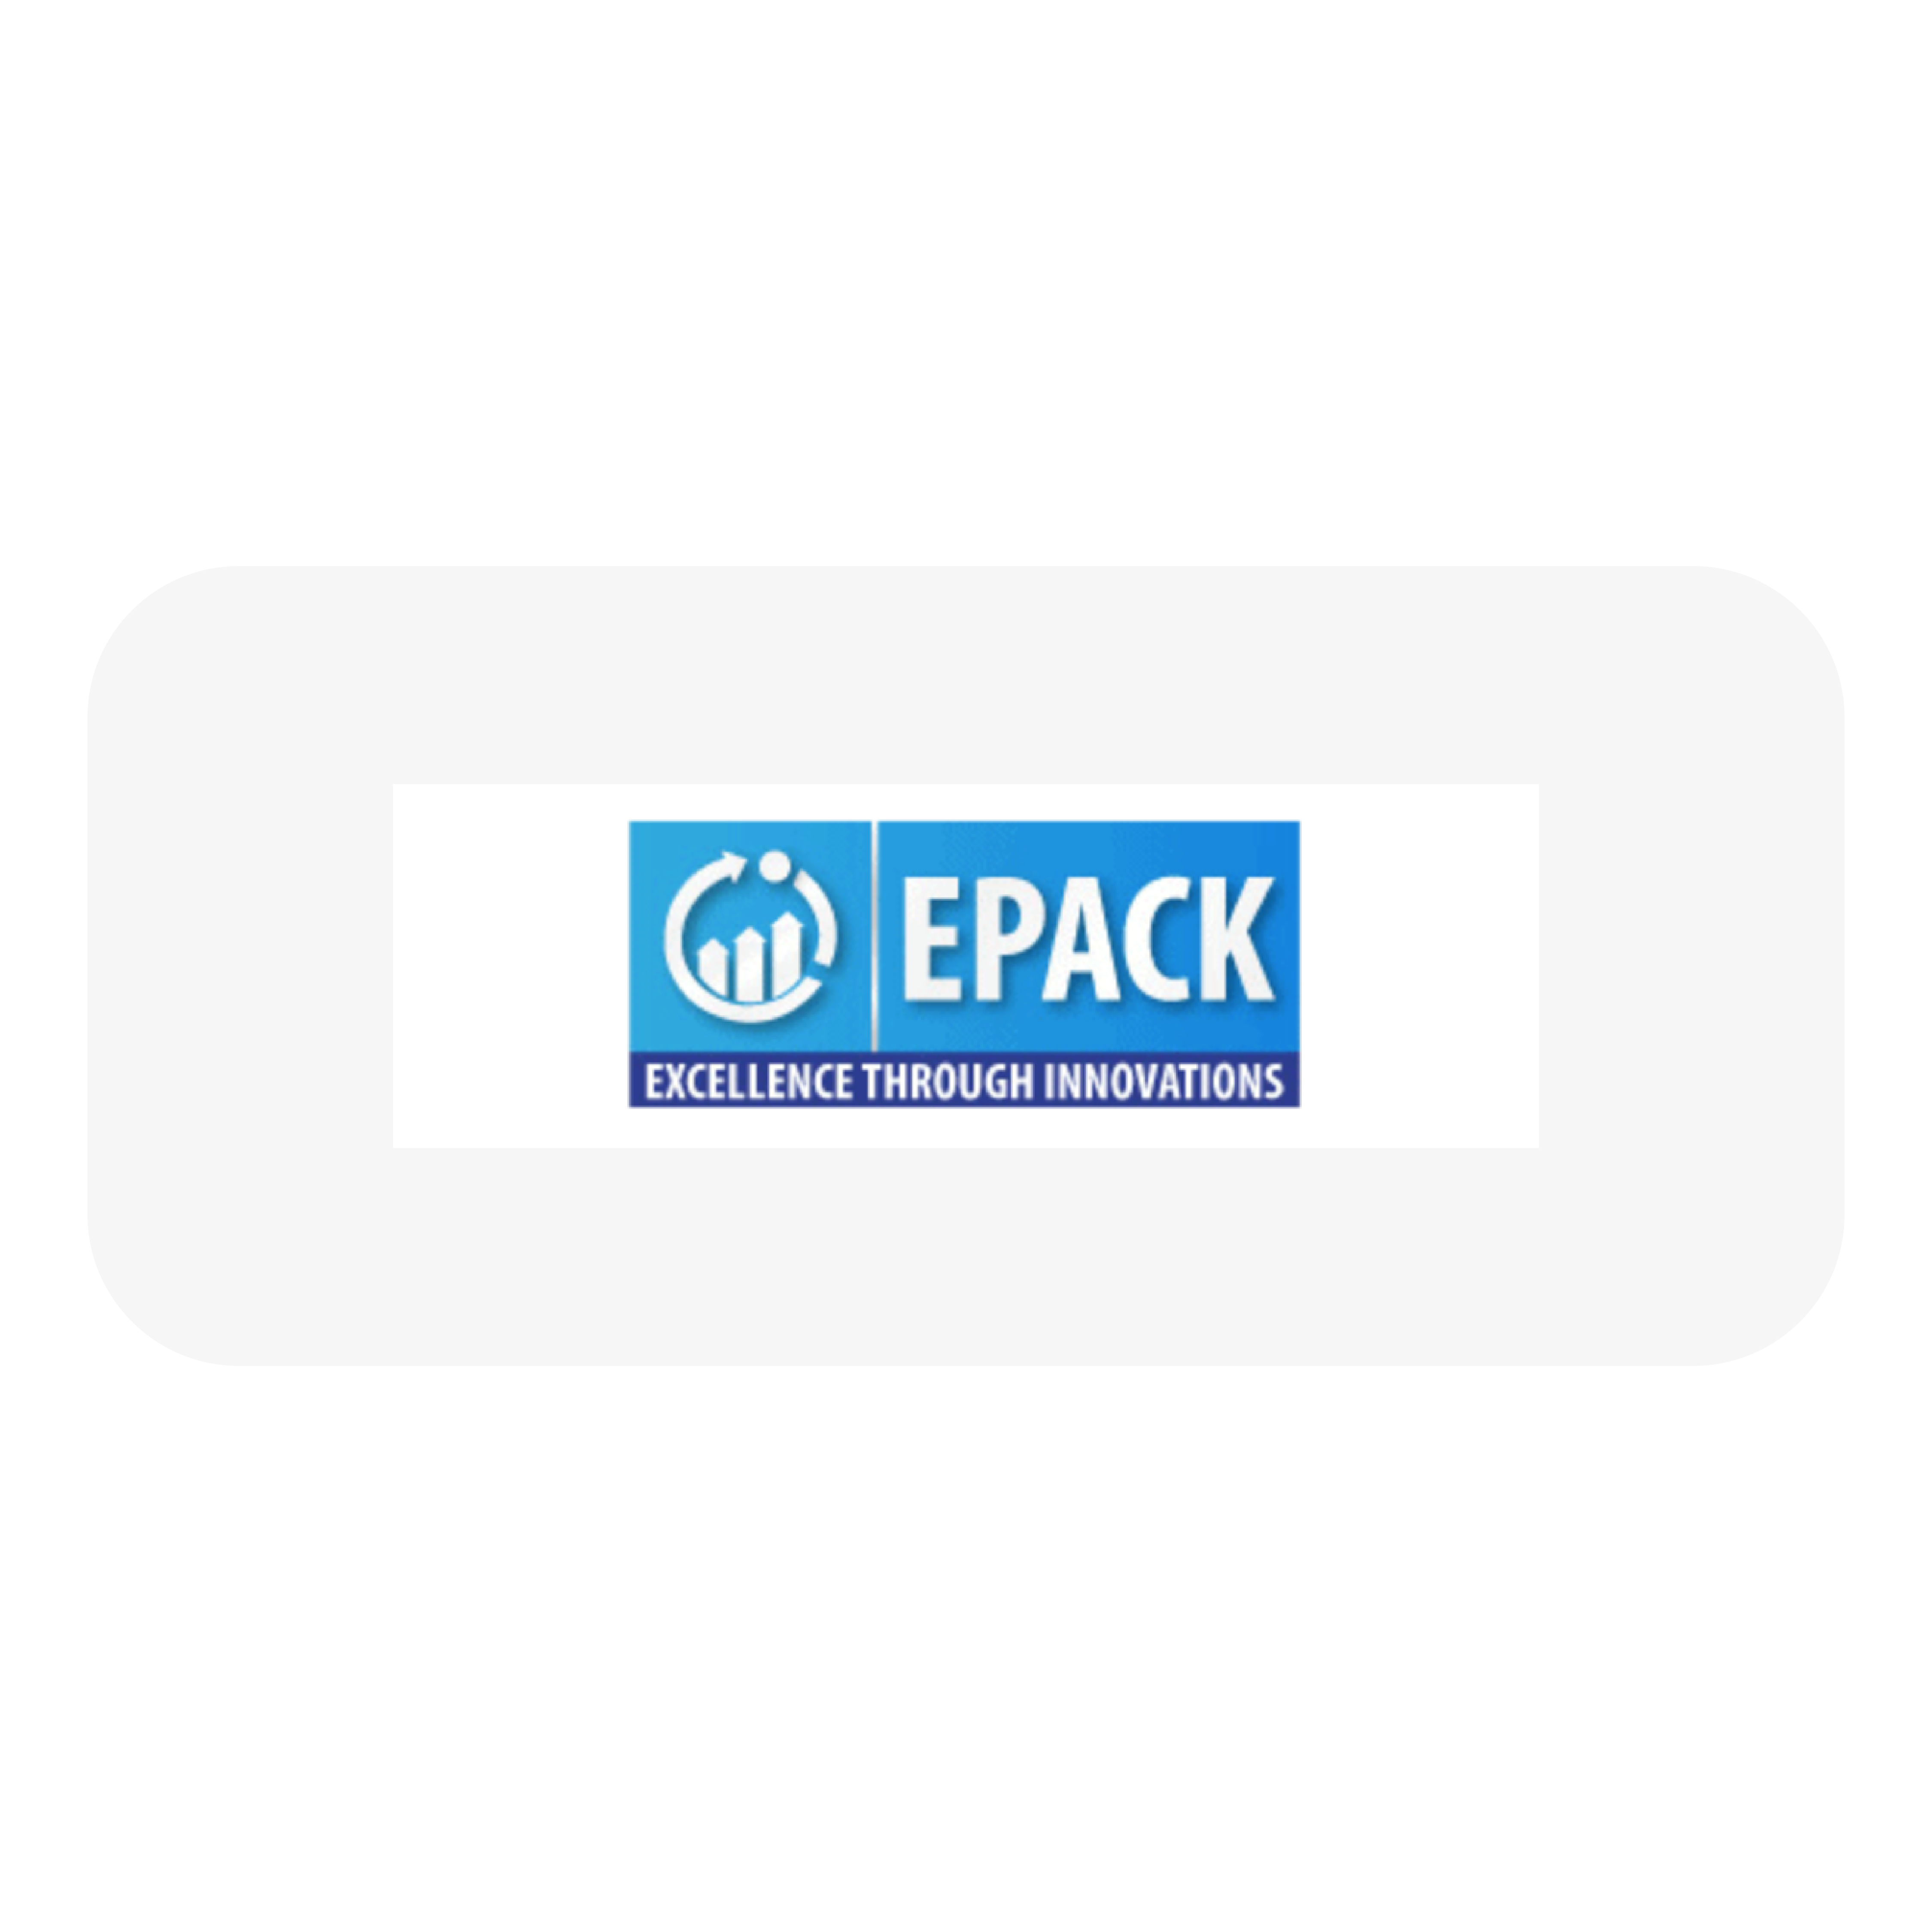 epack-01